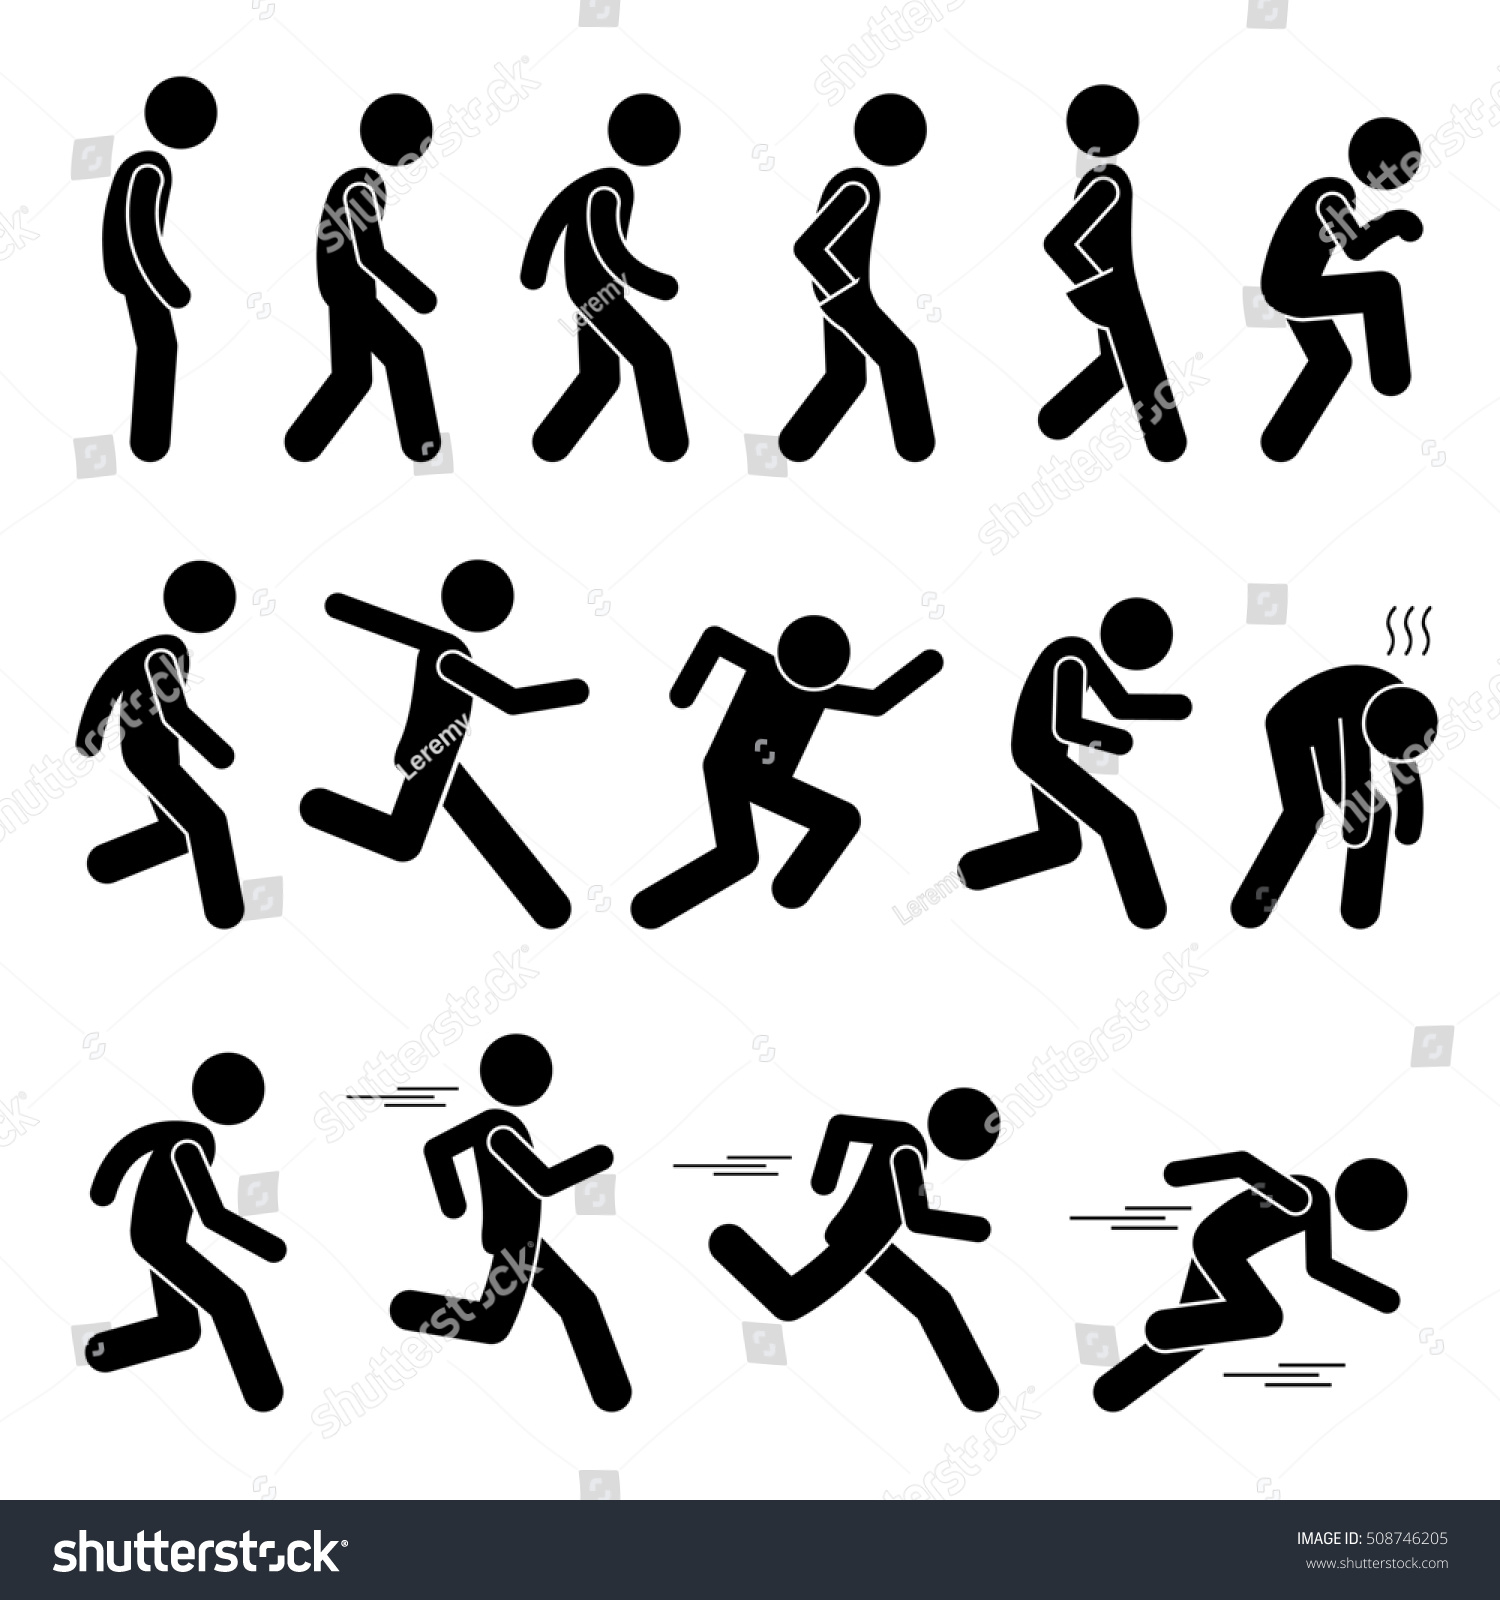 走る様々な人間が歩く姿の姿姿のポーズ棒の姿のスティックマン絵文字のアイコン のイラスト素材